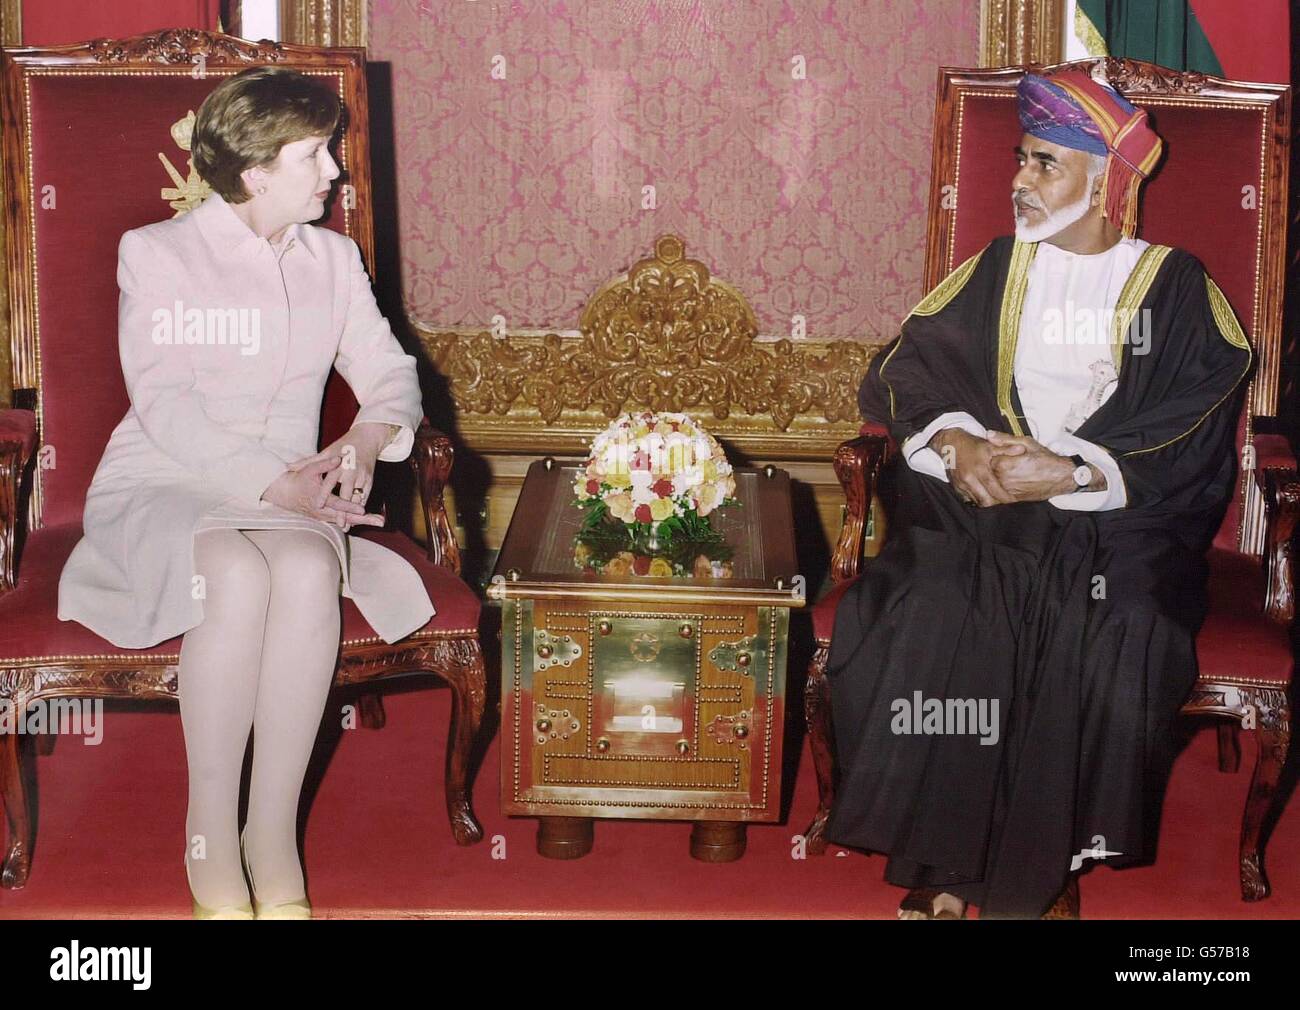 La Présidente de l'Irlande Mary McAleese s'entretient avec le Sultan Qaboos bin Said d'Oman, au Palais du Sultan dans la capitale Muscat, après son arrivée dans le pays du Moyen-Orient pour une visite de 4 jours. Banque D'Images